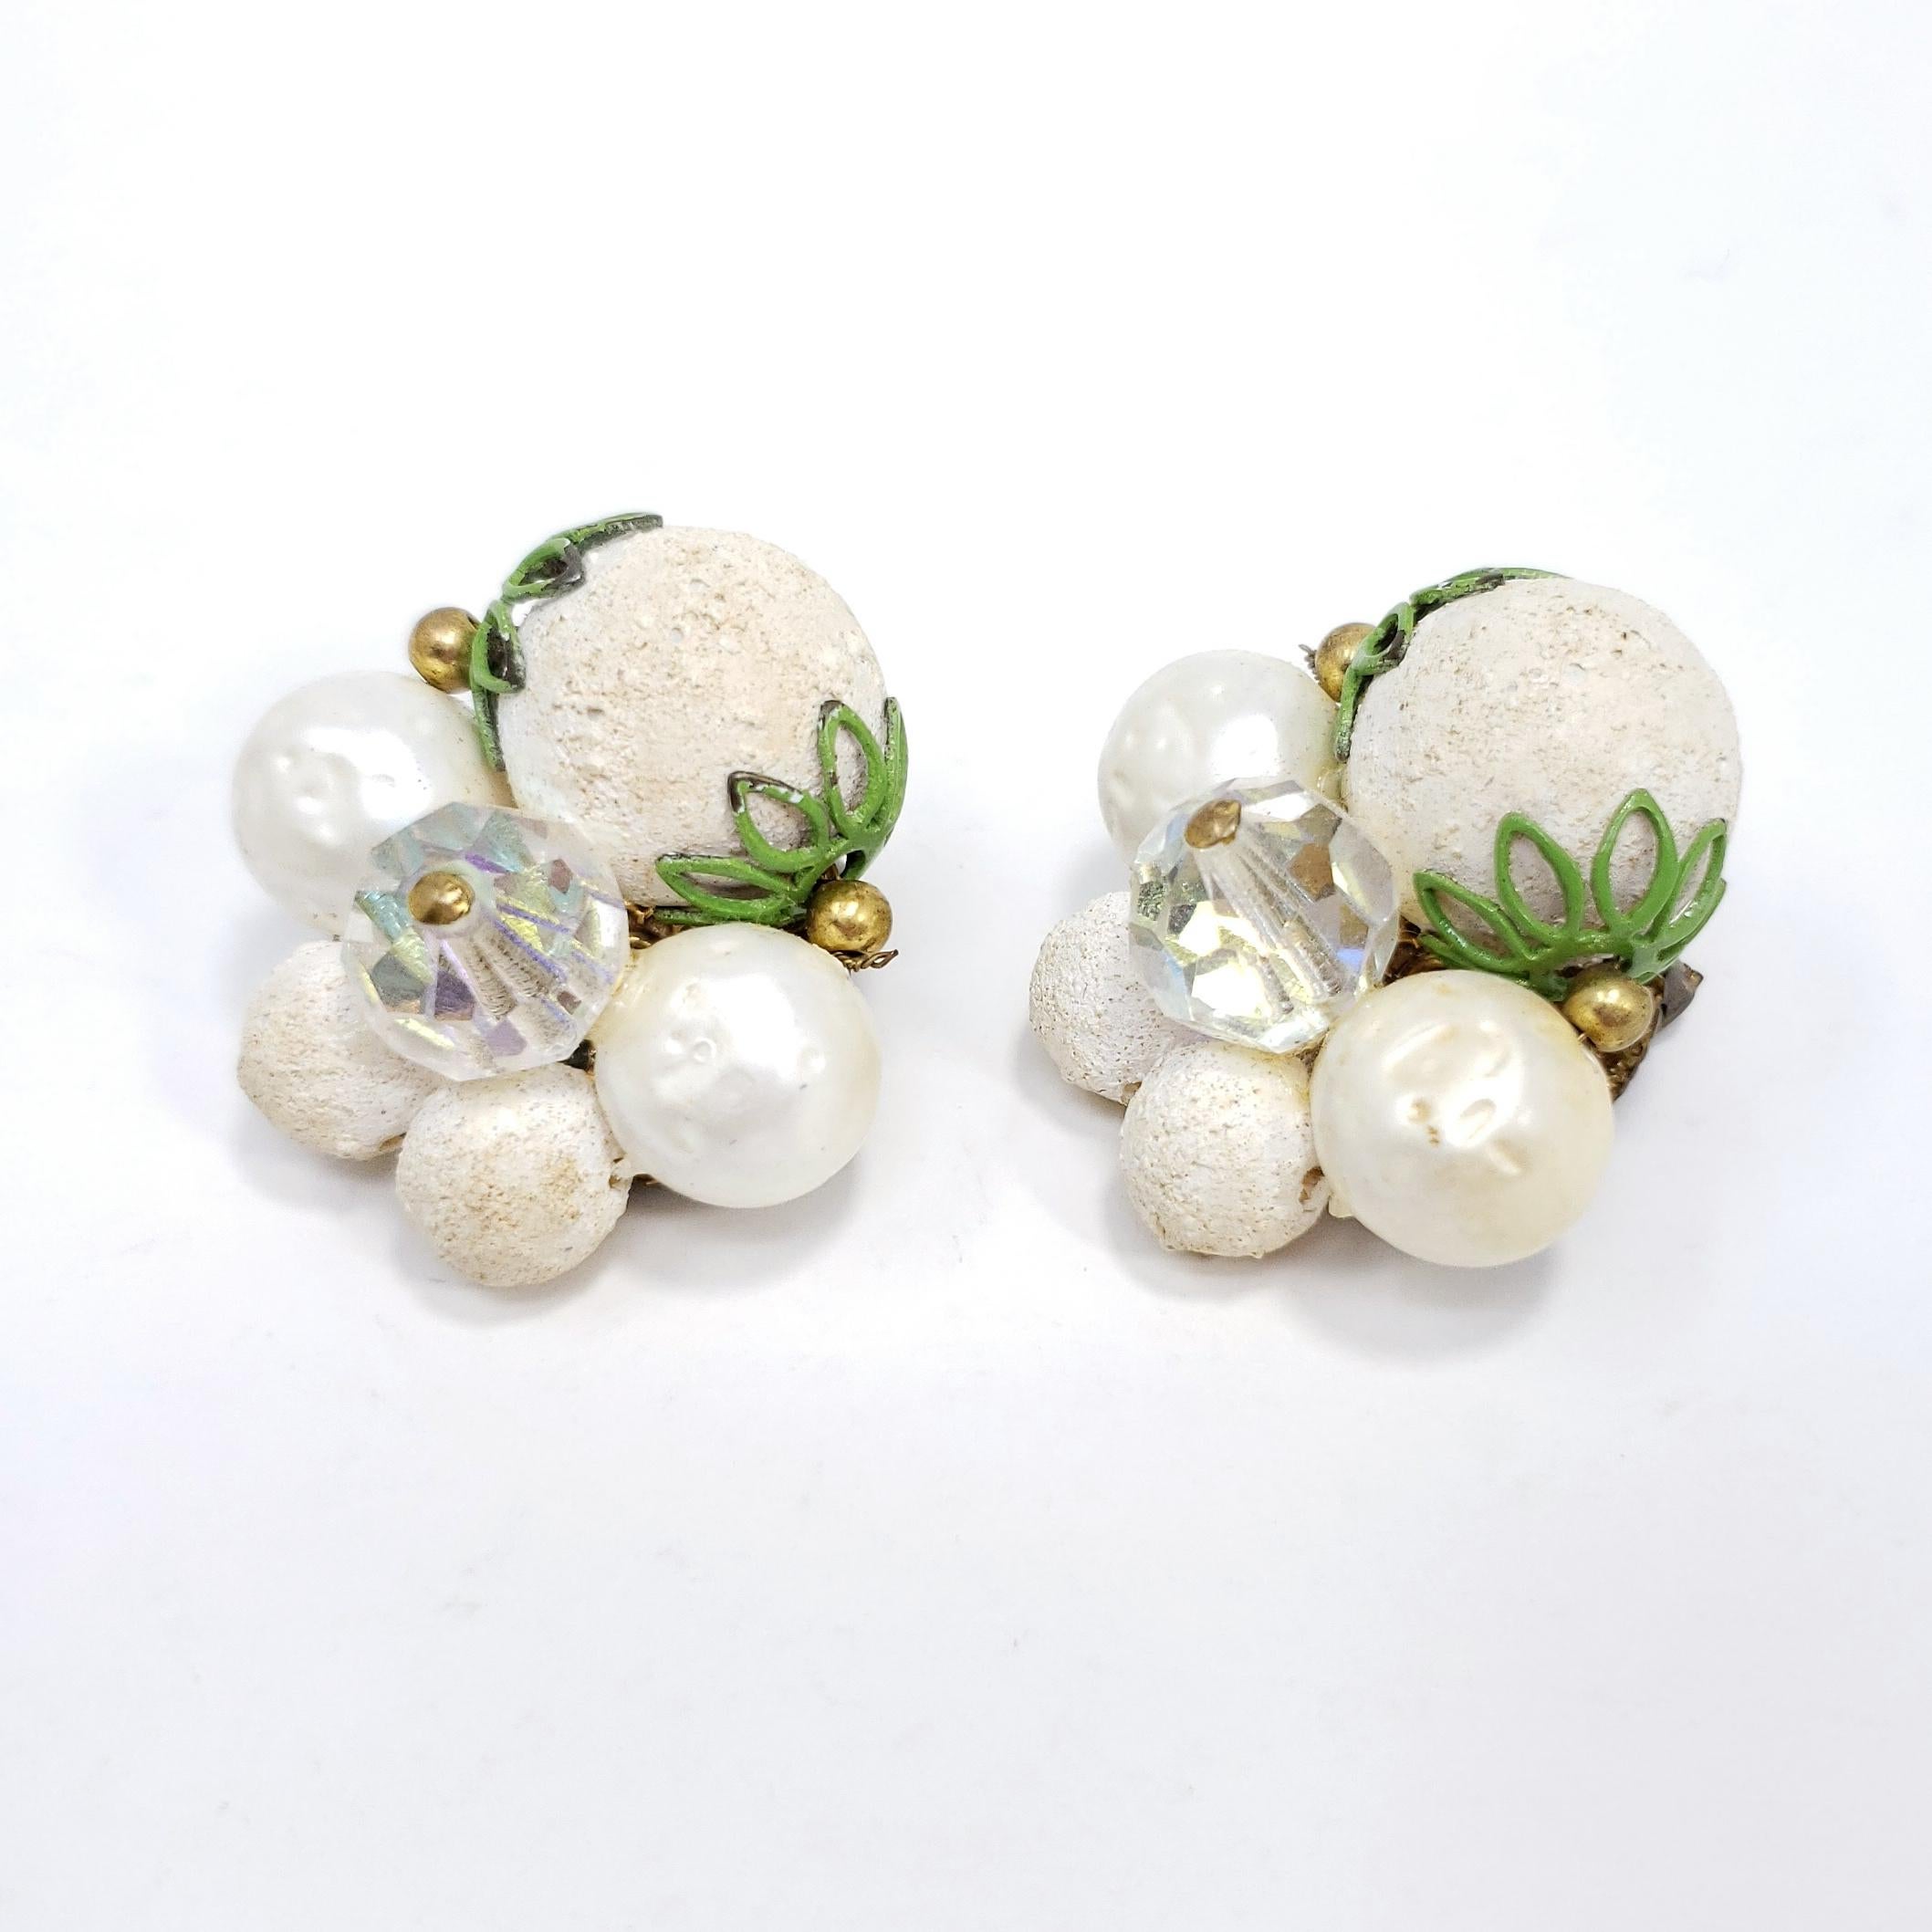 Retro-Schick! Diese Vintage-Clip-Ohrringe bestehen aus einer Gruppe strukturierter weißer Perlen mit grünen und messingfarbenen Akzenten.

Um die Mitte des 19. Jahrhunderts. Messing-Ton.